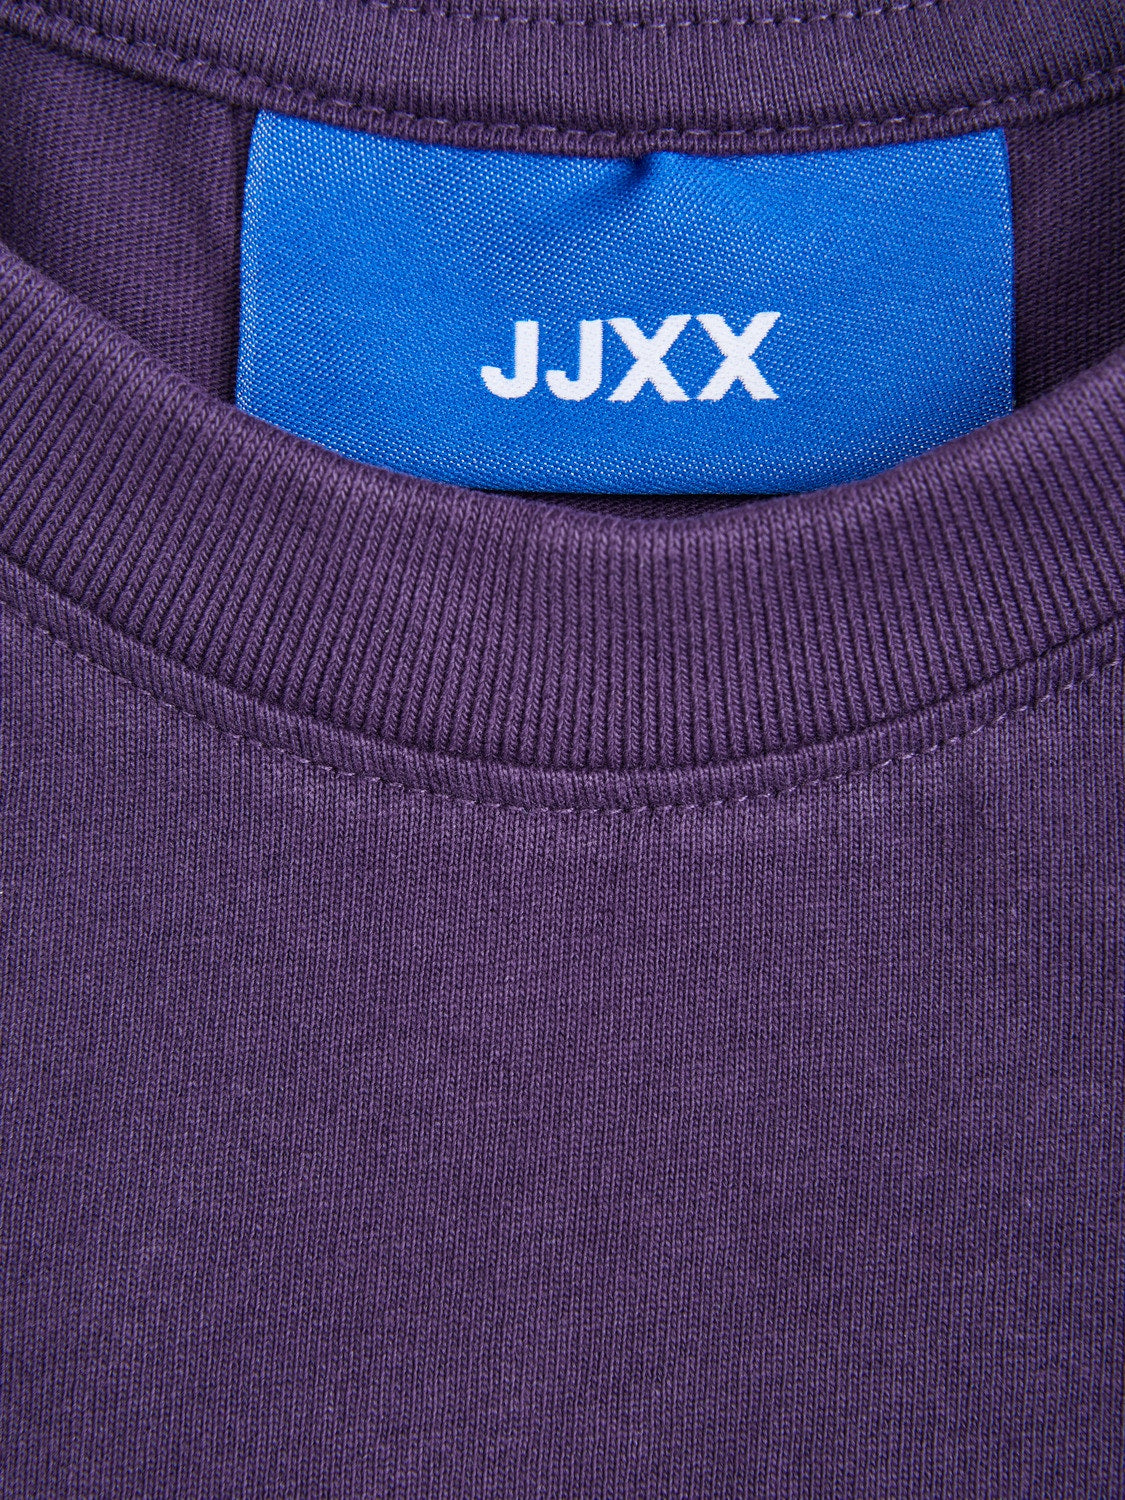 t-shirt-femme-joda-mauve-jjxx-12244372-dm2-shop-06